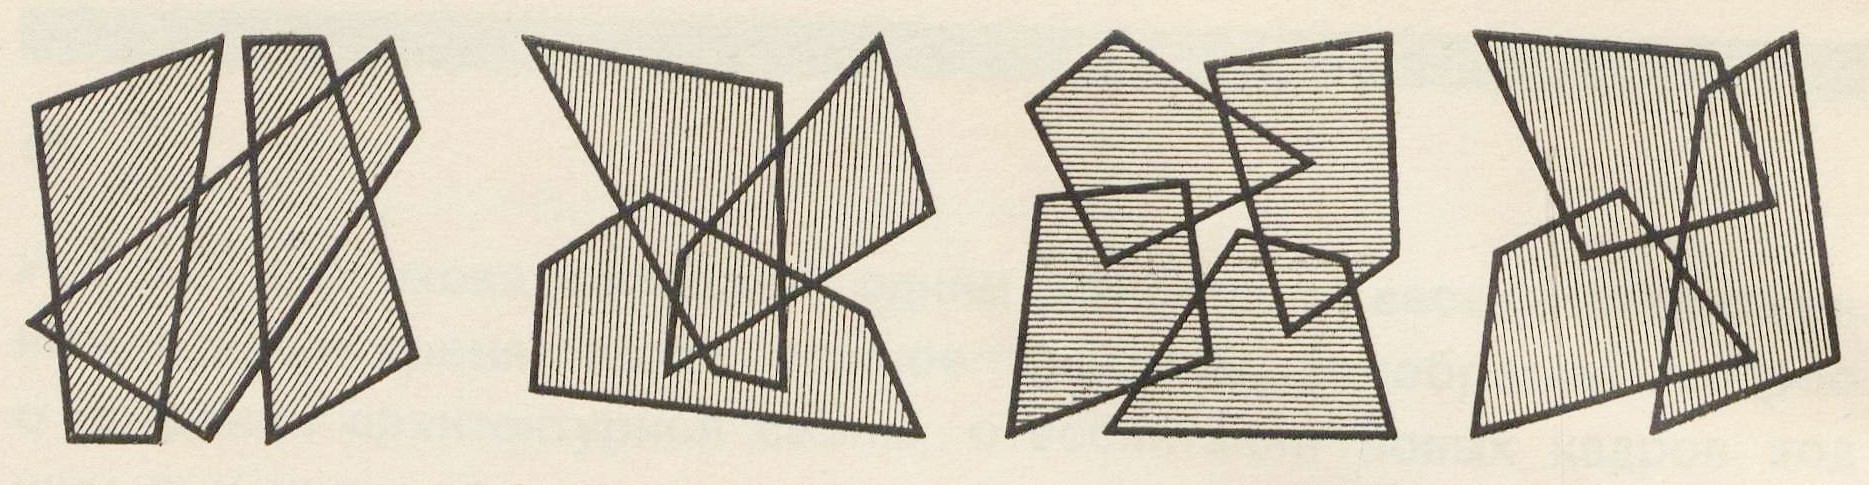 2, 3, 4, 5 Плоскостные композиции из неправильных четырехугольников